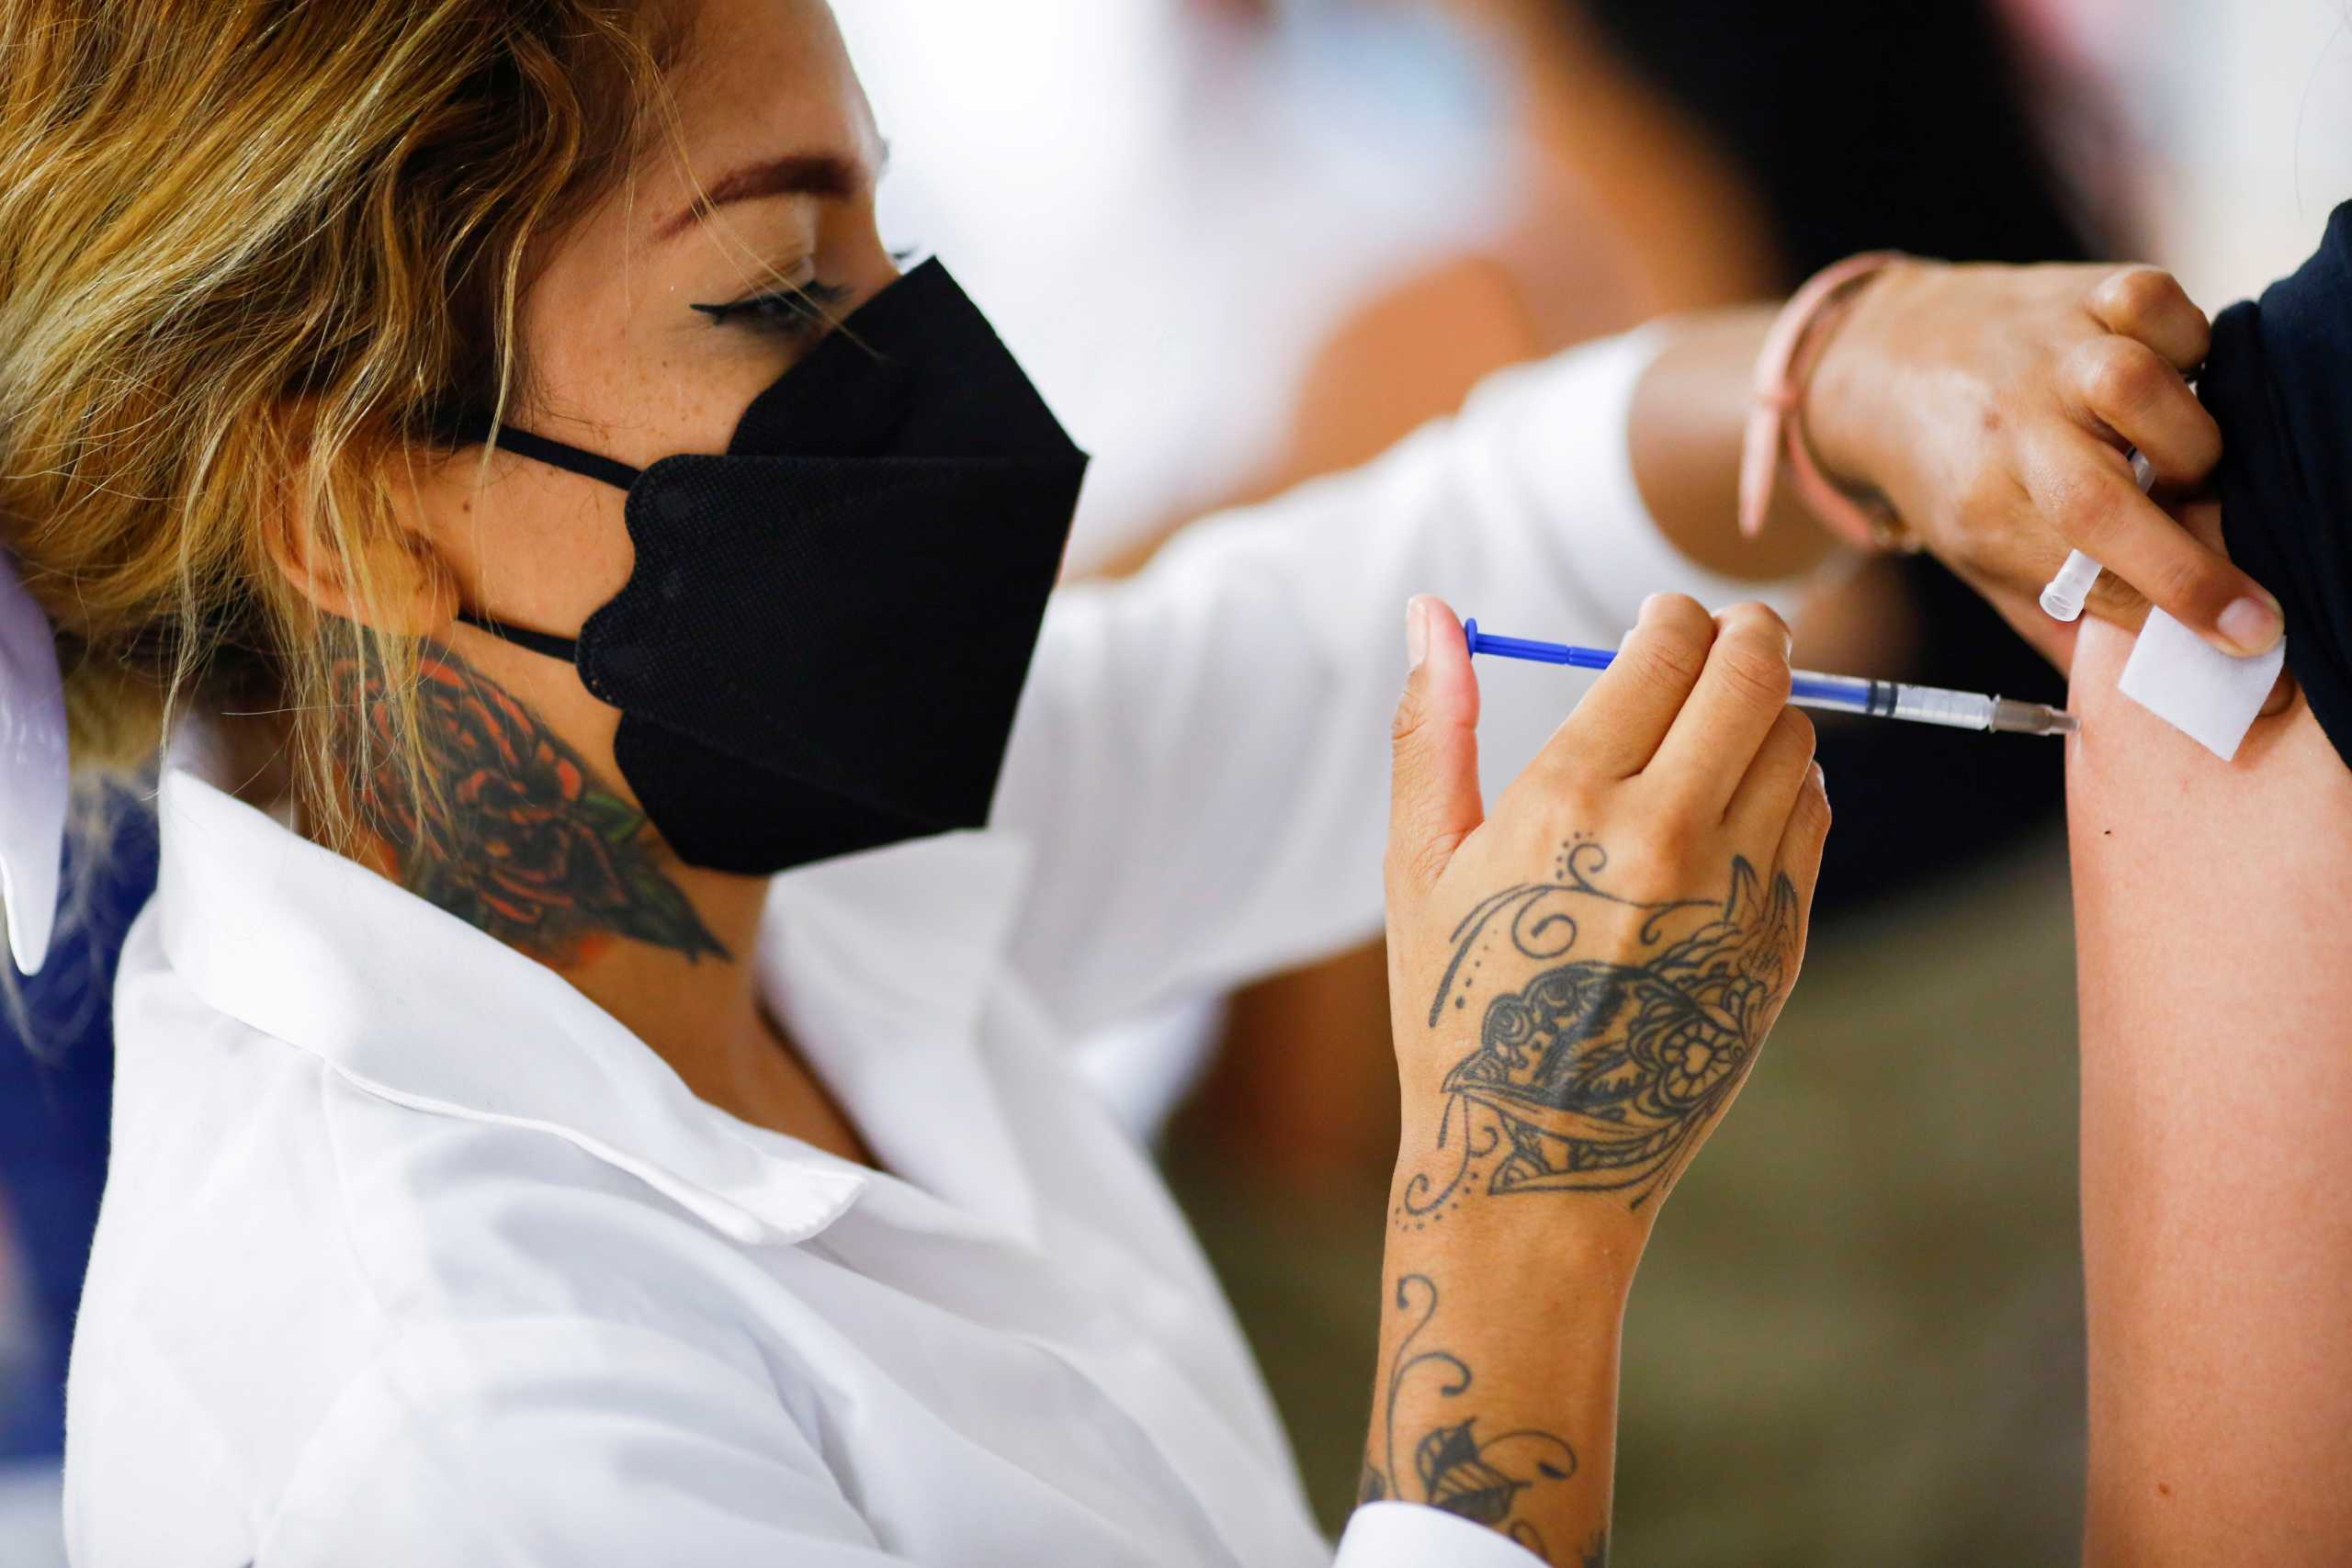 Κορονοϊός: Πόσοι πολίτες πρέπει να εμβολιαστούν για να υπάρξει ανοσία – Σε επιφυλακή για τυχόν έκρηξη της πανδημίας